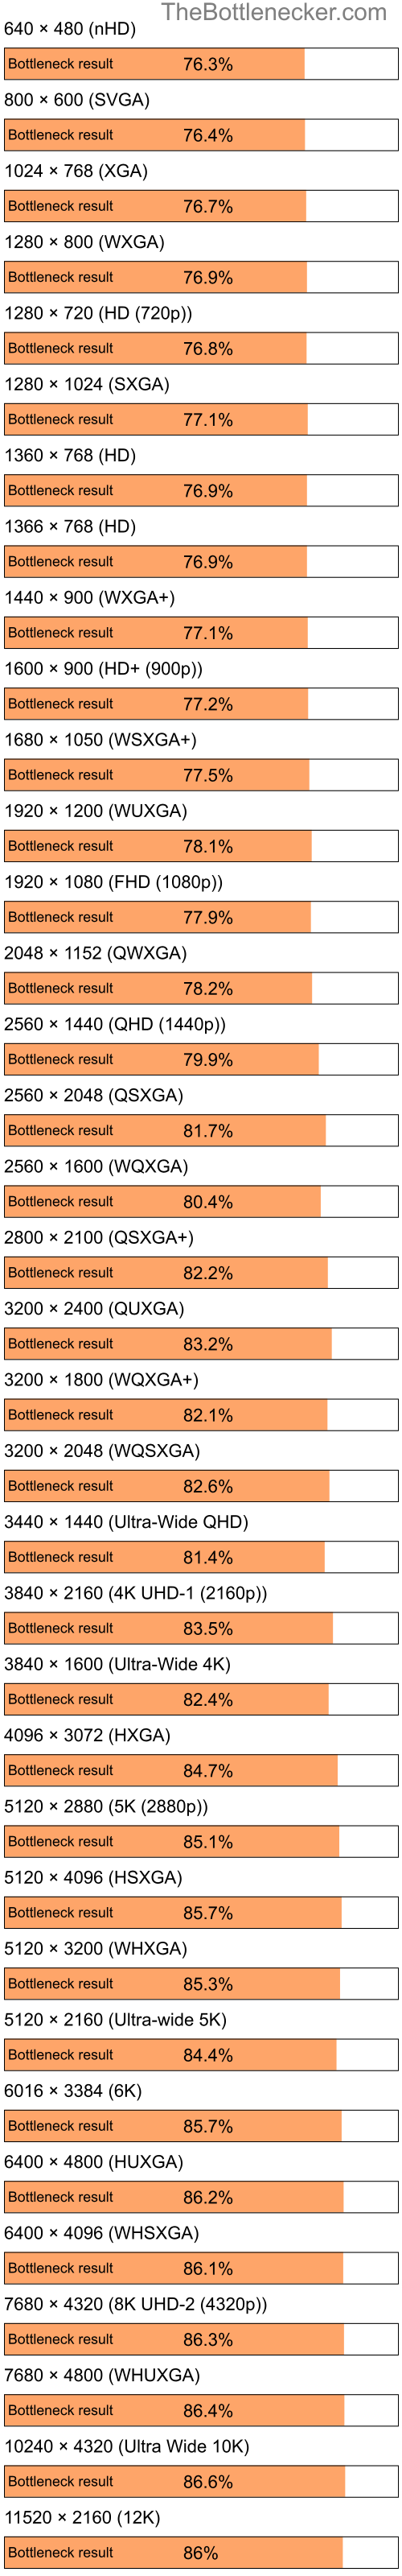 Bottleneck results by resolution for Intel Celeron and NVIDIA GeForce 7025 in General Tasks